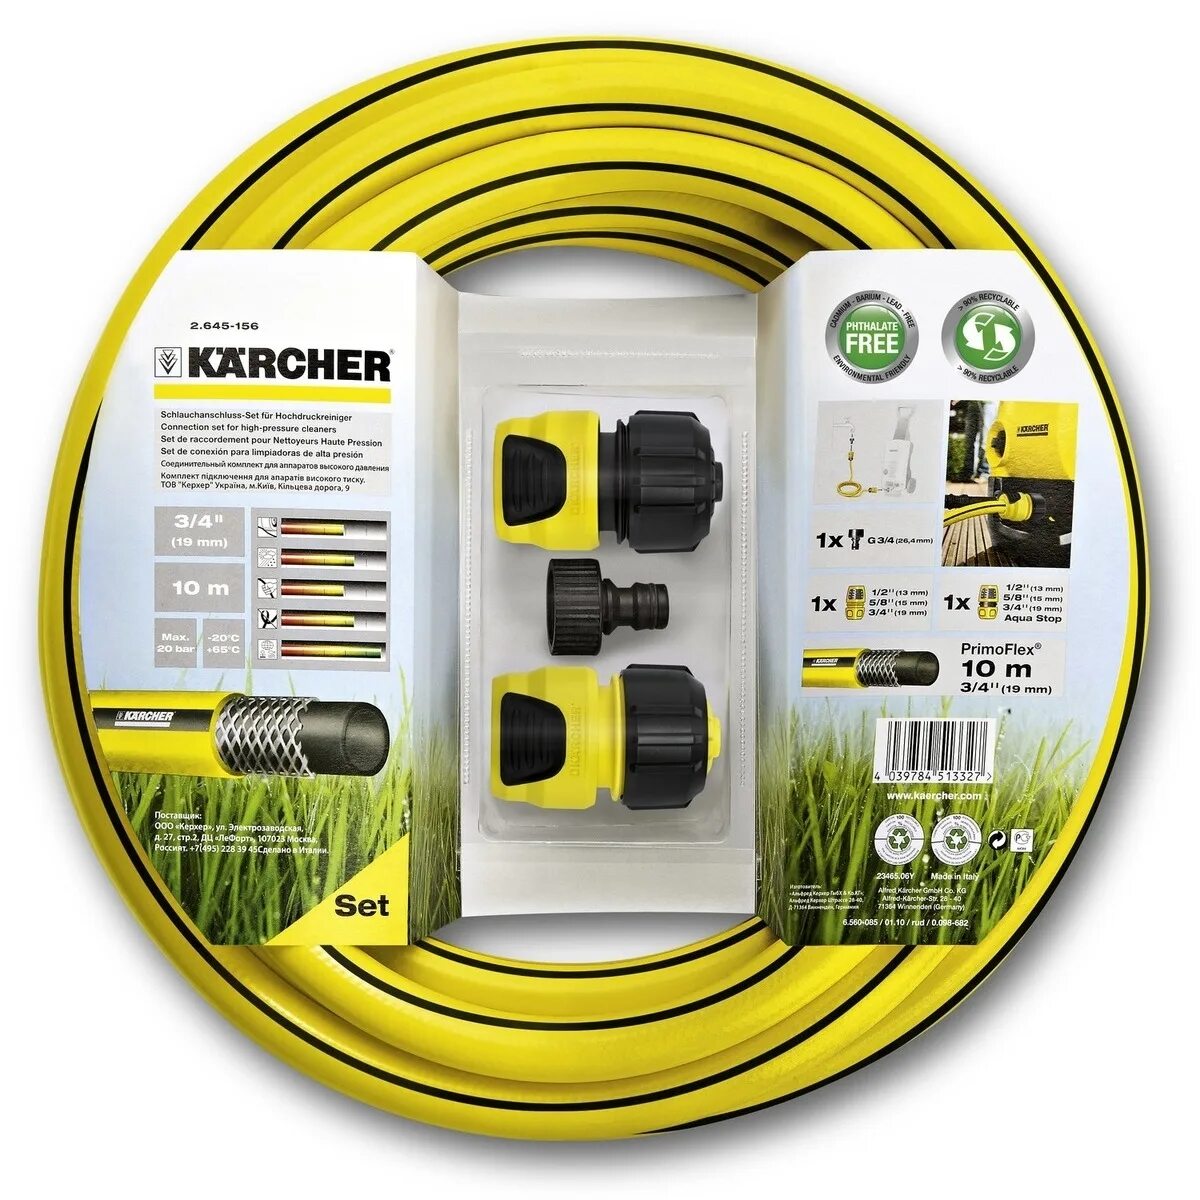 Комплект для полива Karcher шланг PRIMOFLEX 3/4" 10 М, 2 коннектора, штуцер. Karcher 2.645-156. Комплект для подключения минимоек Karcher 2.645-156.0. Karcher – набор 2.645-238.0.